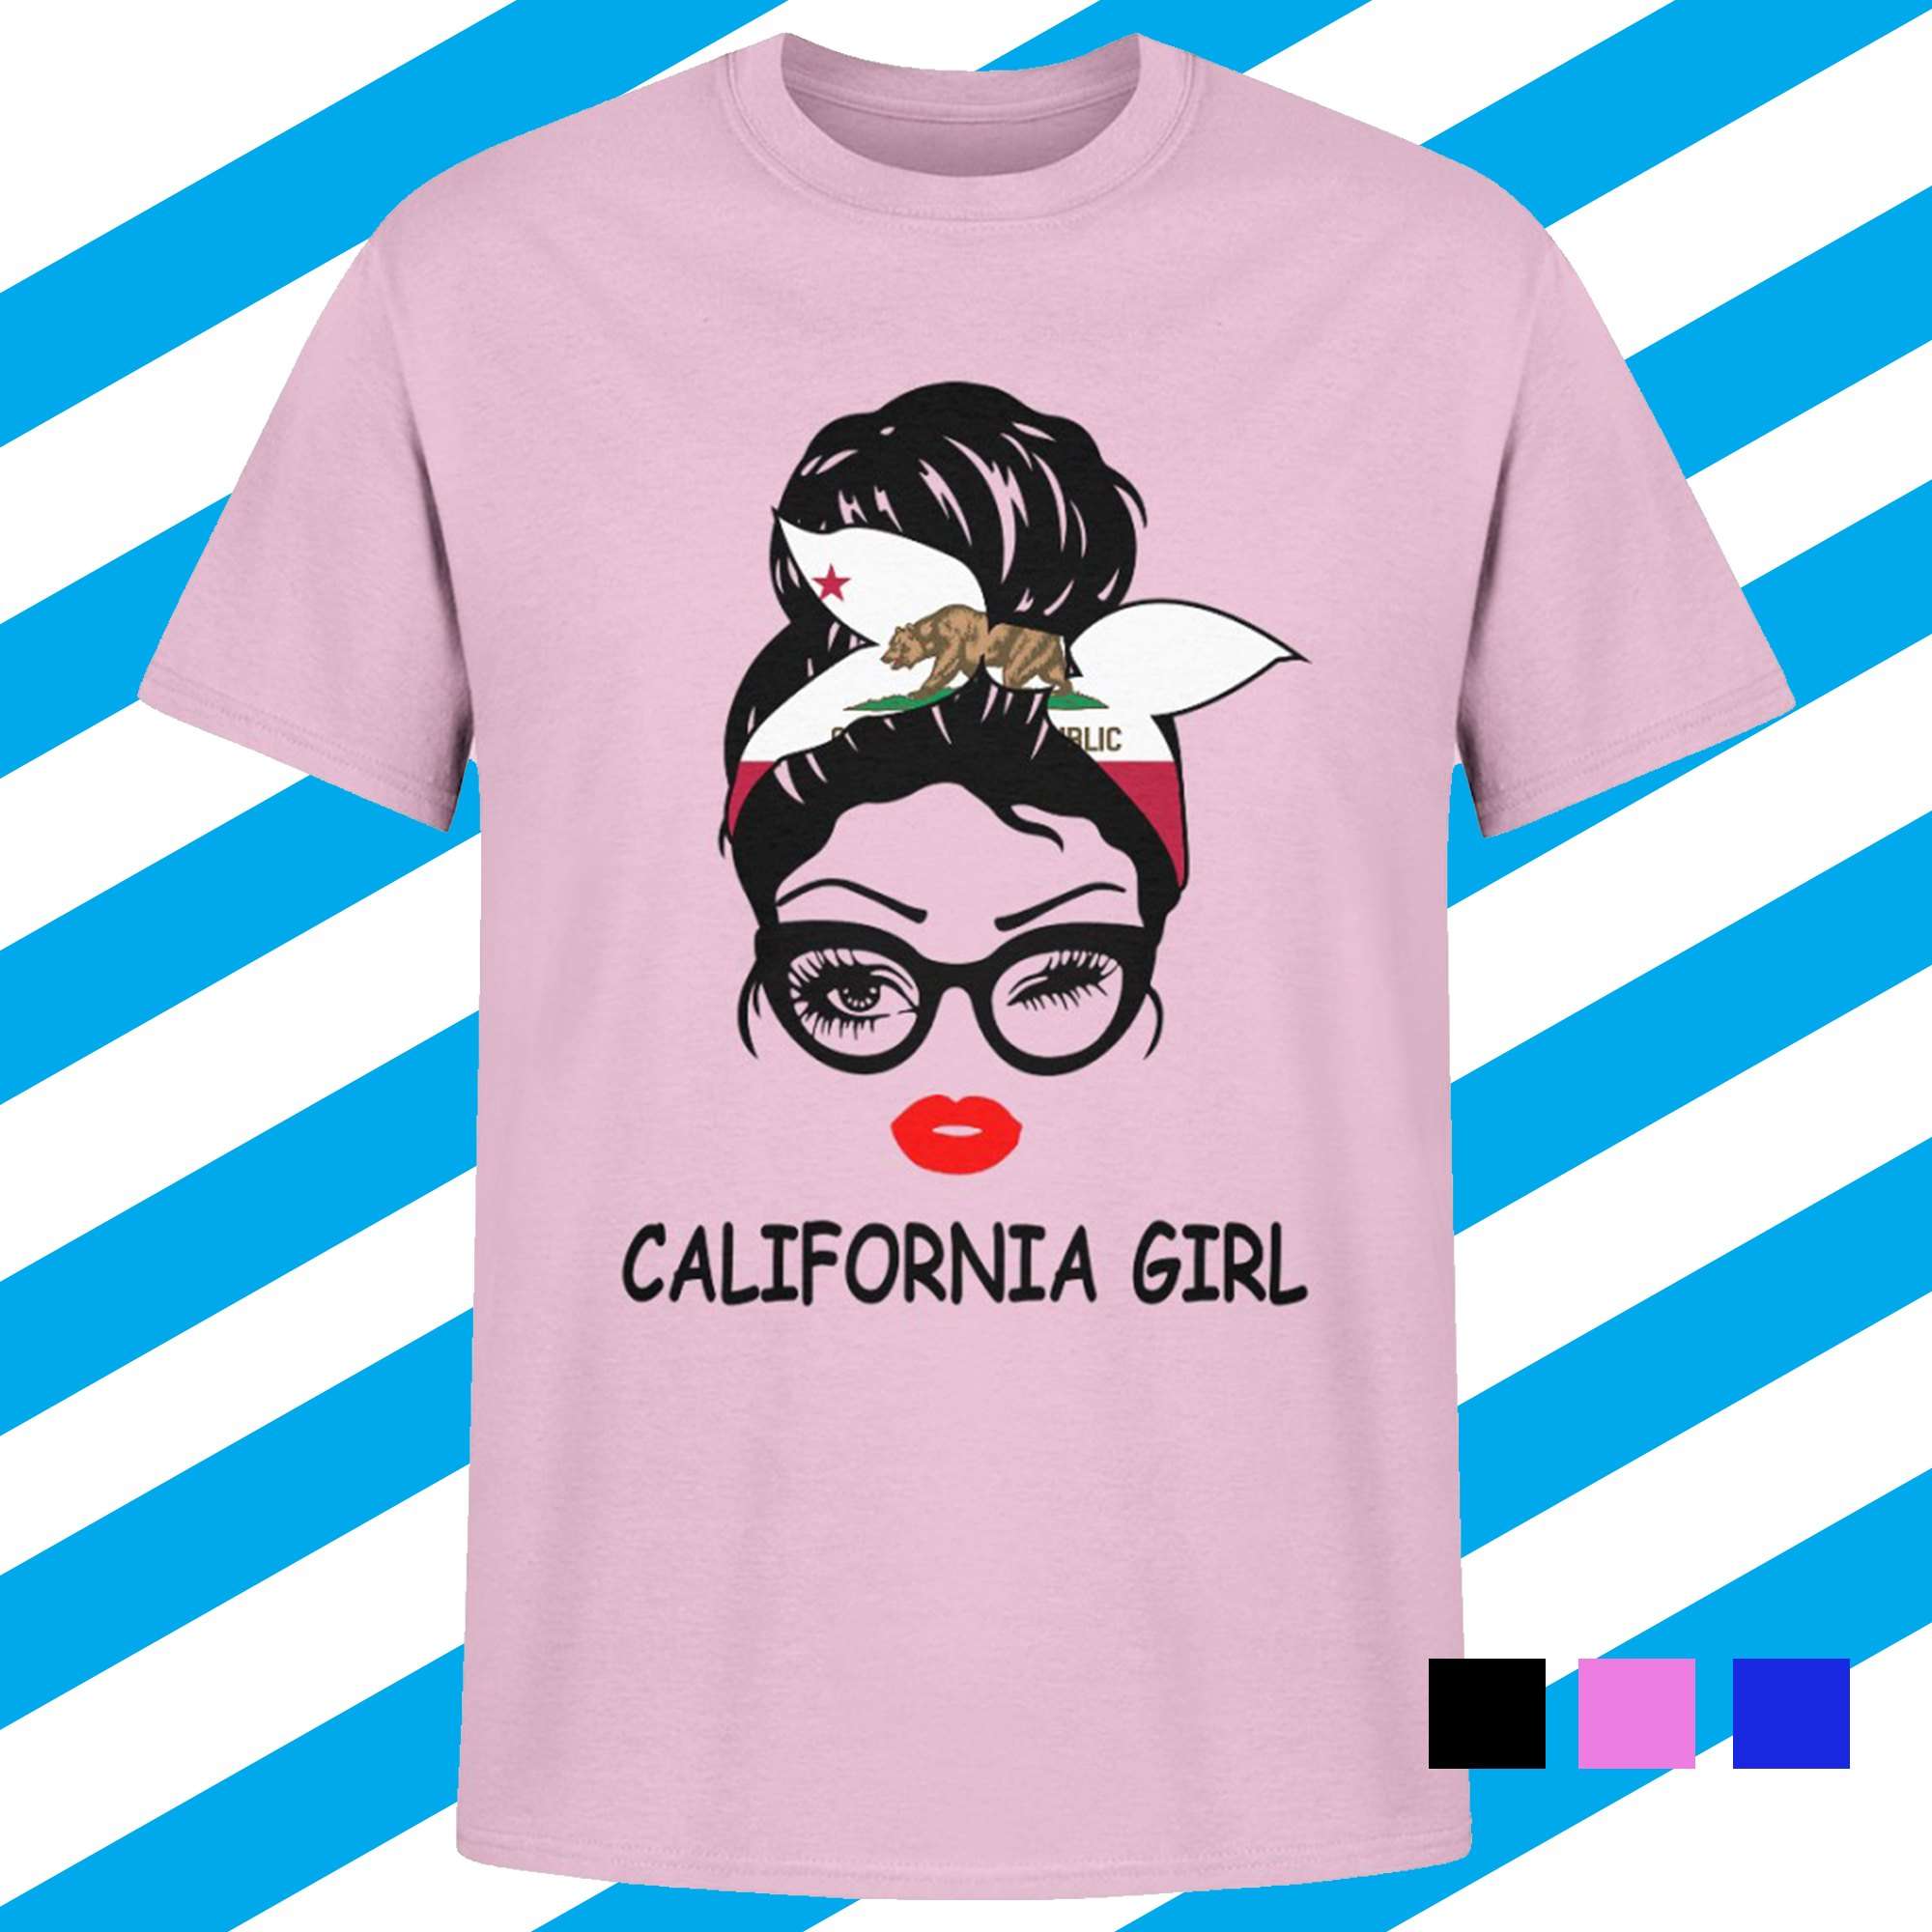 California girl - Girl in California, California state